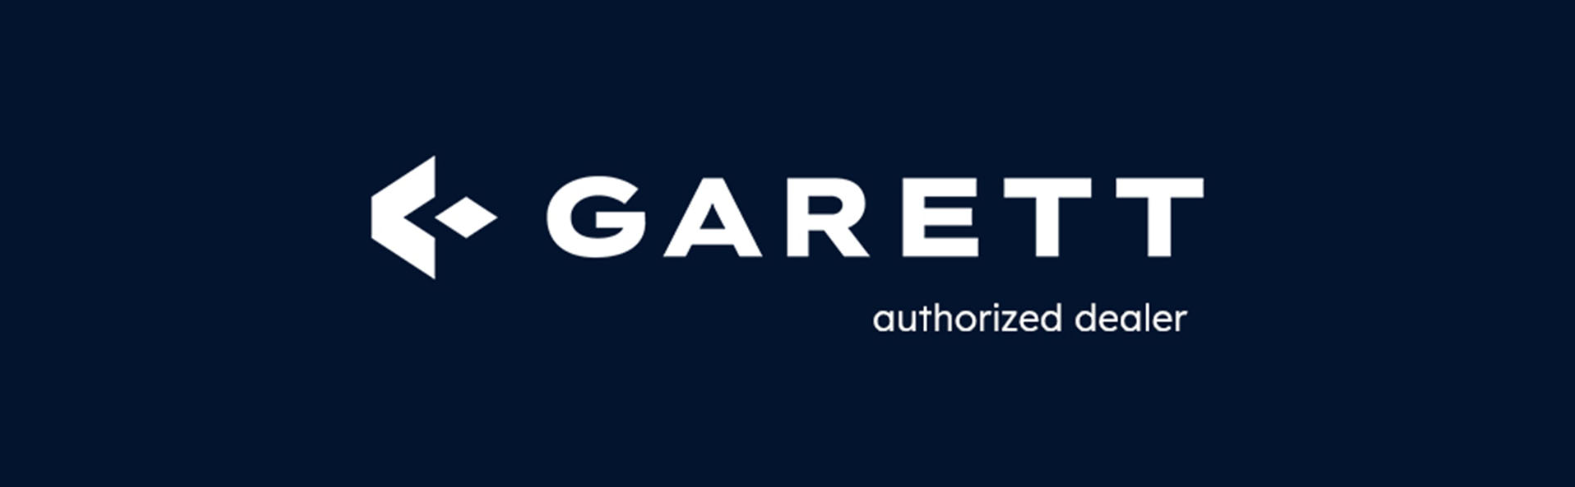 Garett Kids Essa 4G Умные часы для детей GPS / WiFi / IP67 / Video Call / Voice Call / SMS Garett